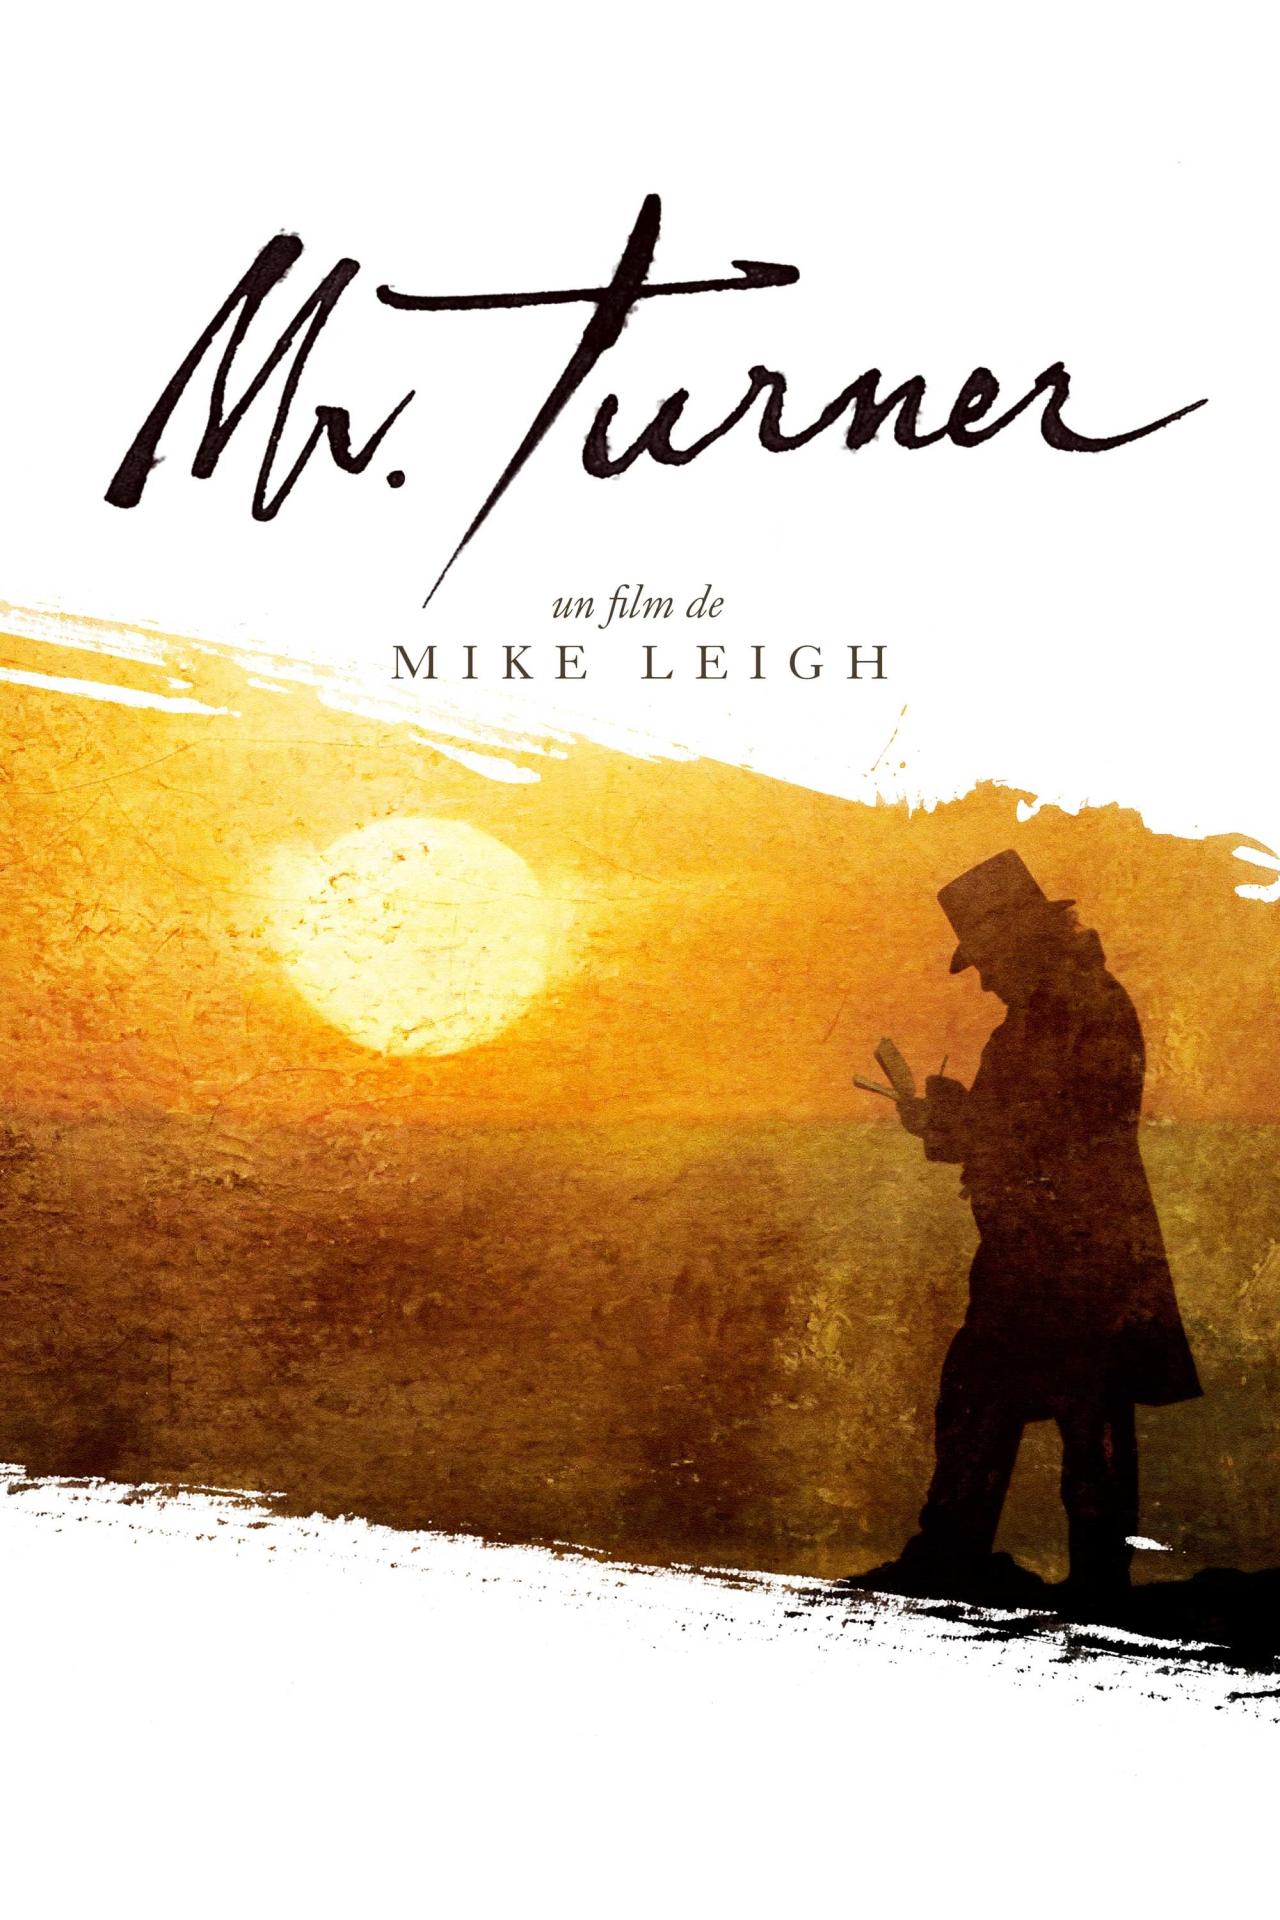 Mr. Turner est-il disponible sur Netflix ou autre ?